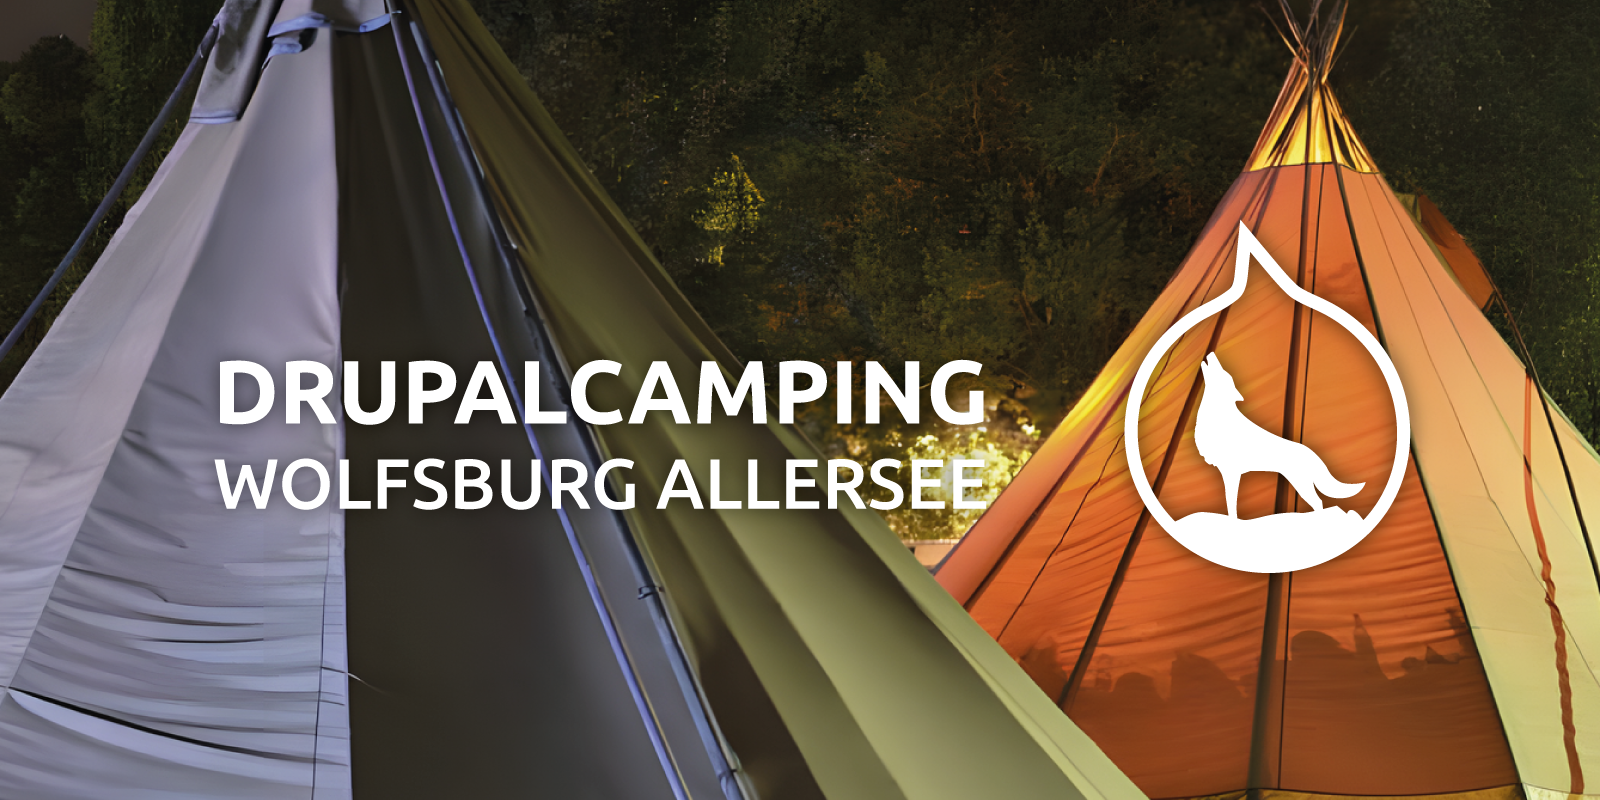 Drupalcamping Wolfsburg Allersee, eine Tropfenform mit einer heulenden Wolfssilhouette, beide auf einem Fotohintergrund mit zwei Tipi-Zelten